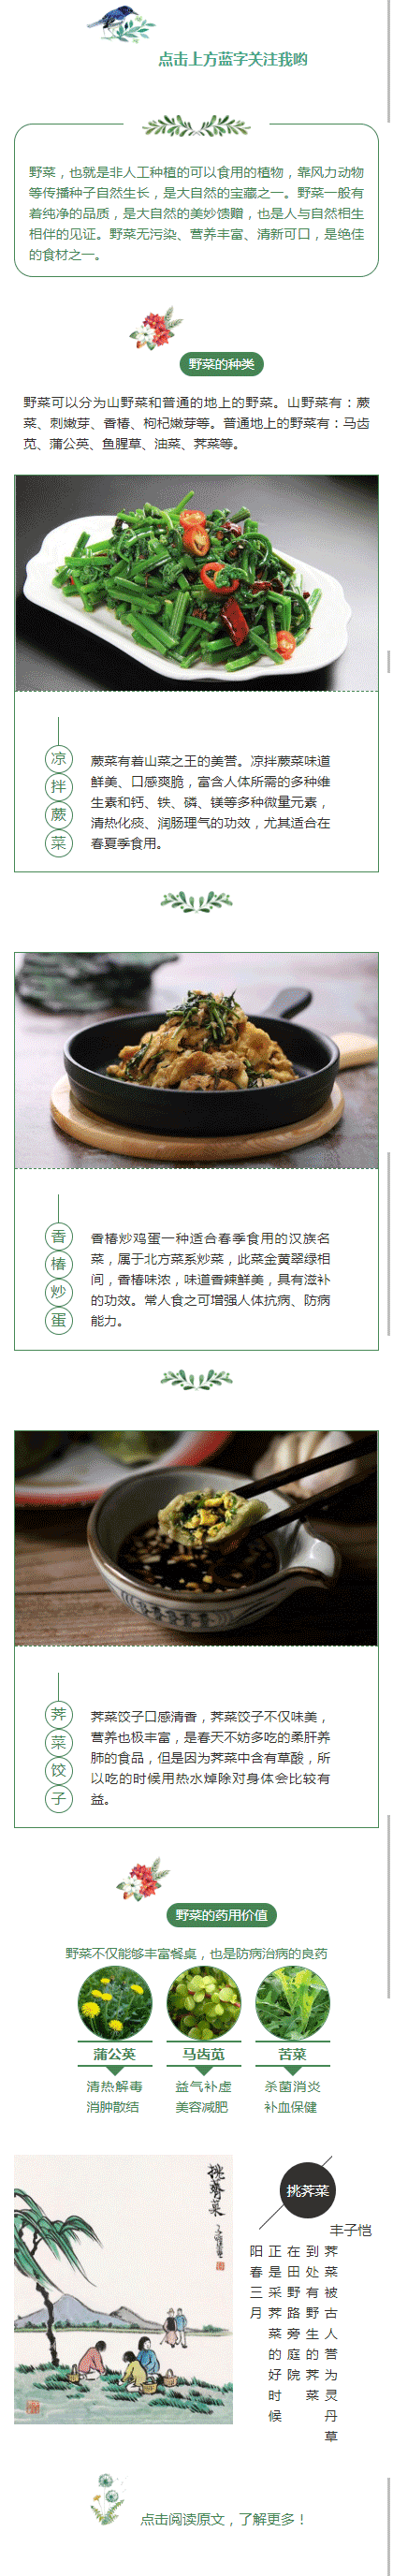 野菜美食特色小吃中国风文章模板